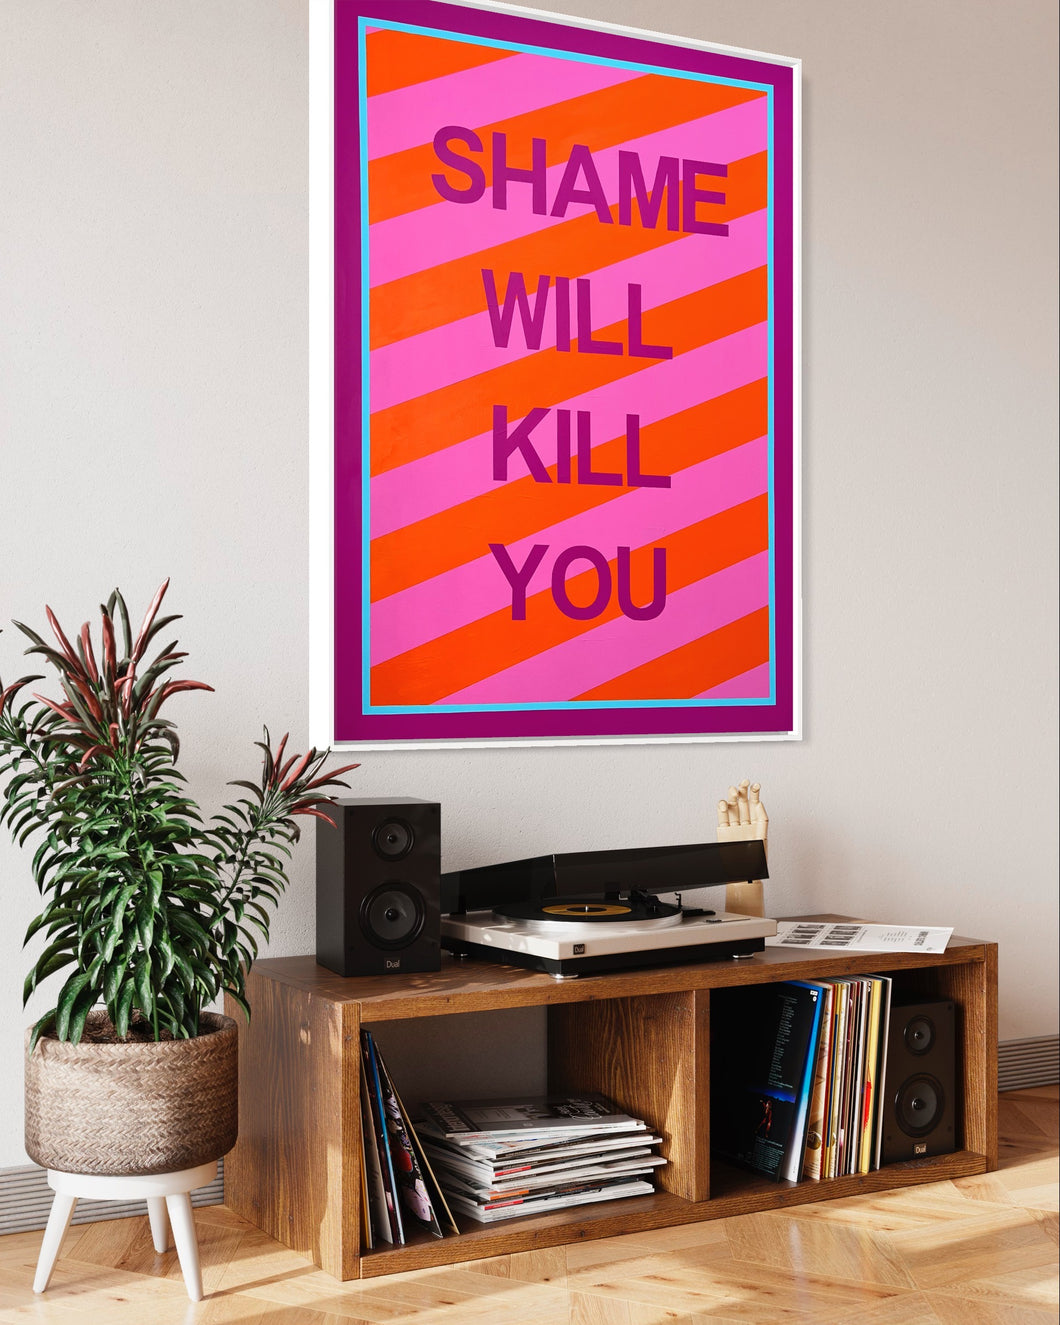 Shame Will Kill You [Framed Original]